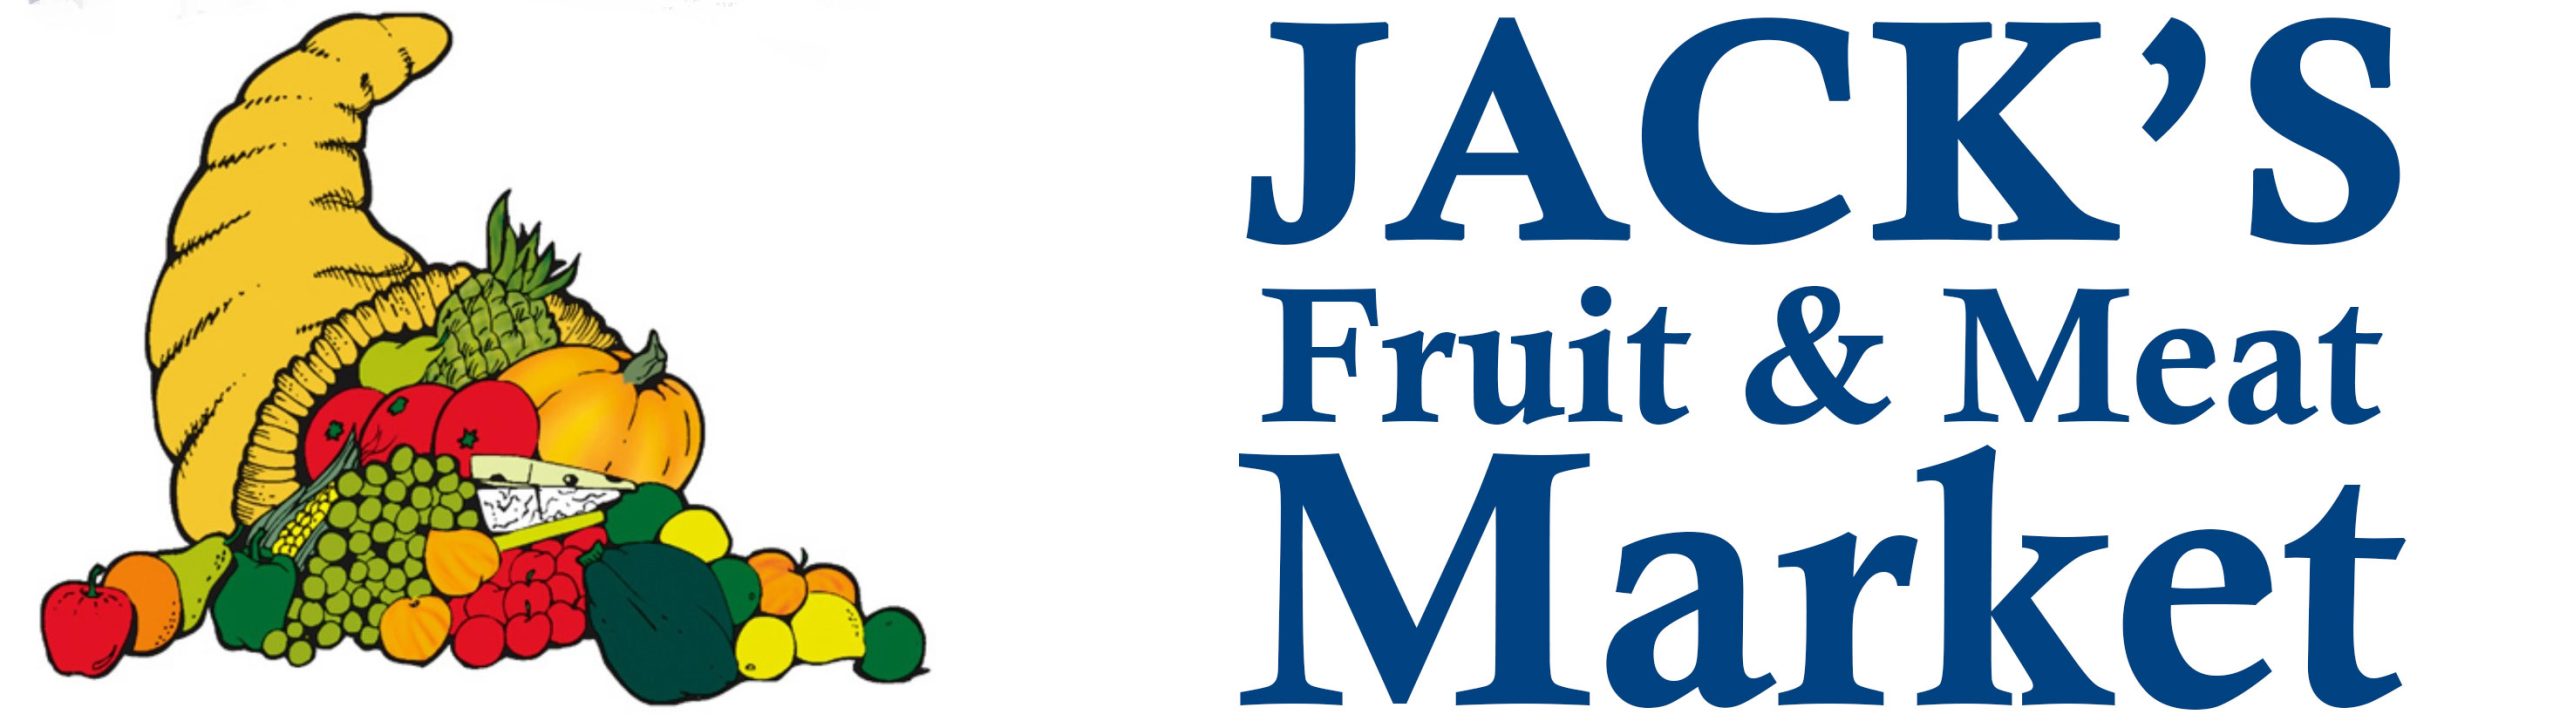 jacks-fruit-meat-market-apply